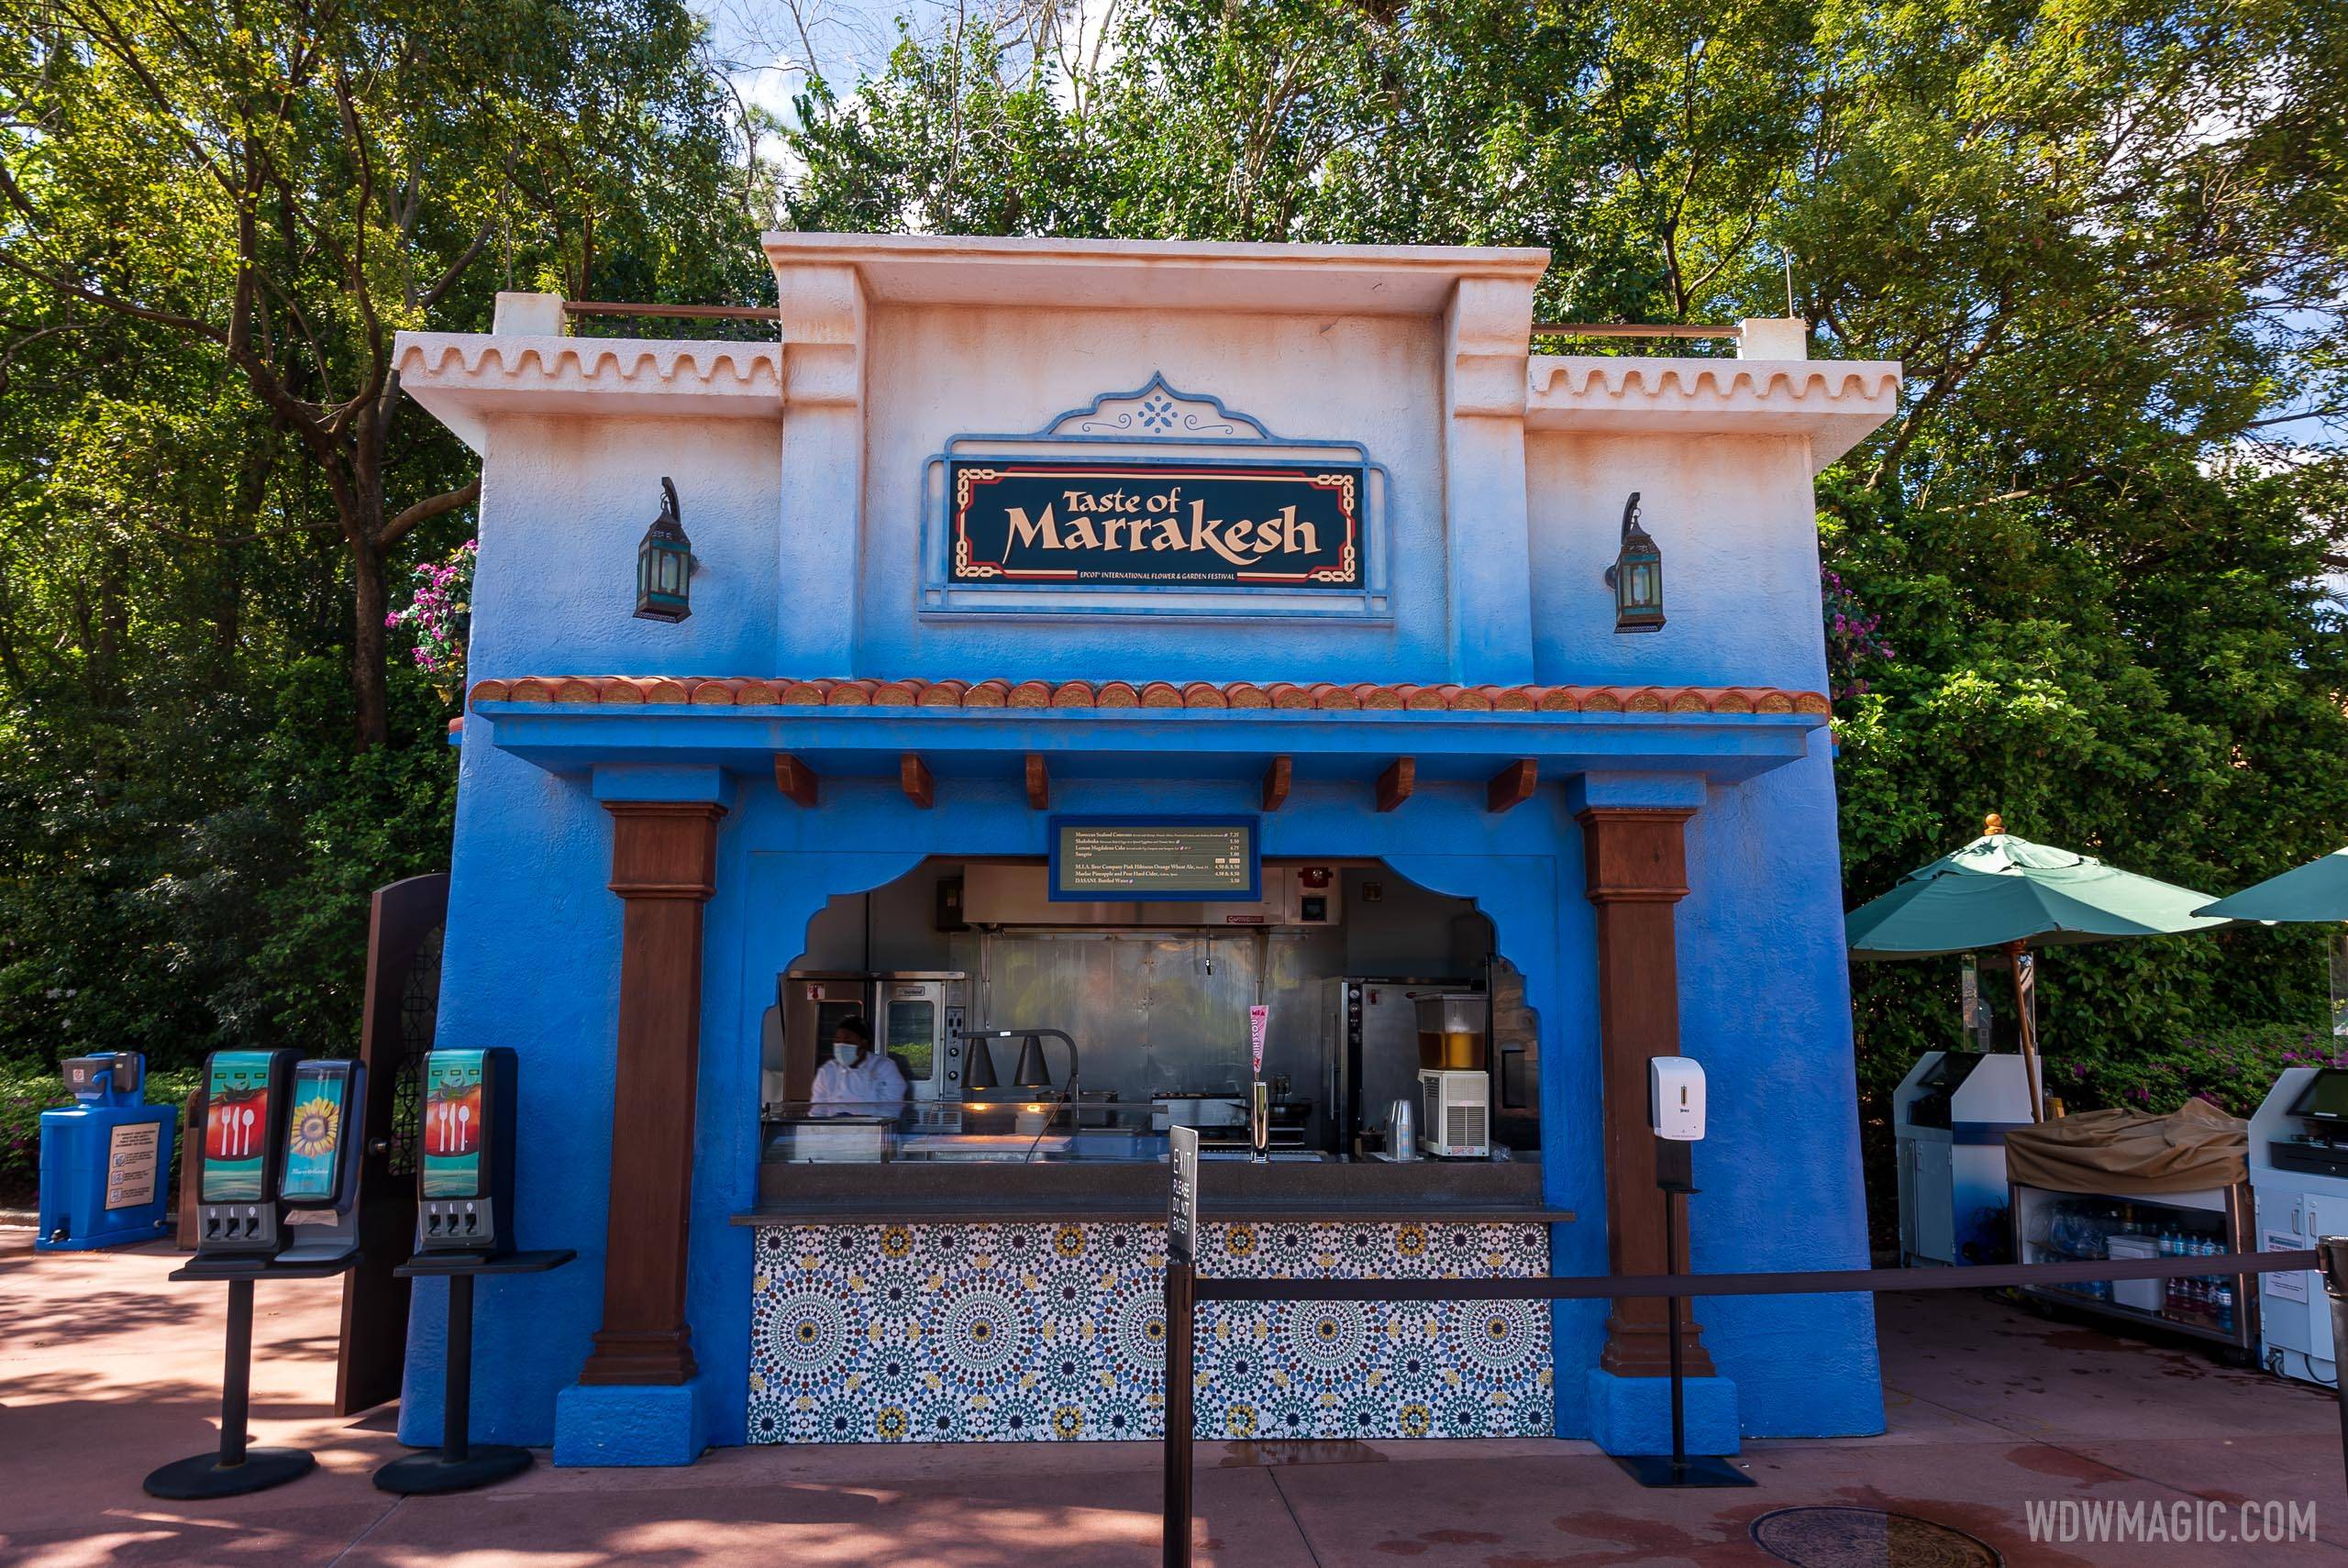 Taste of Marrakesh kiosk